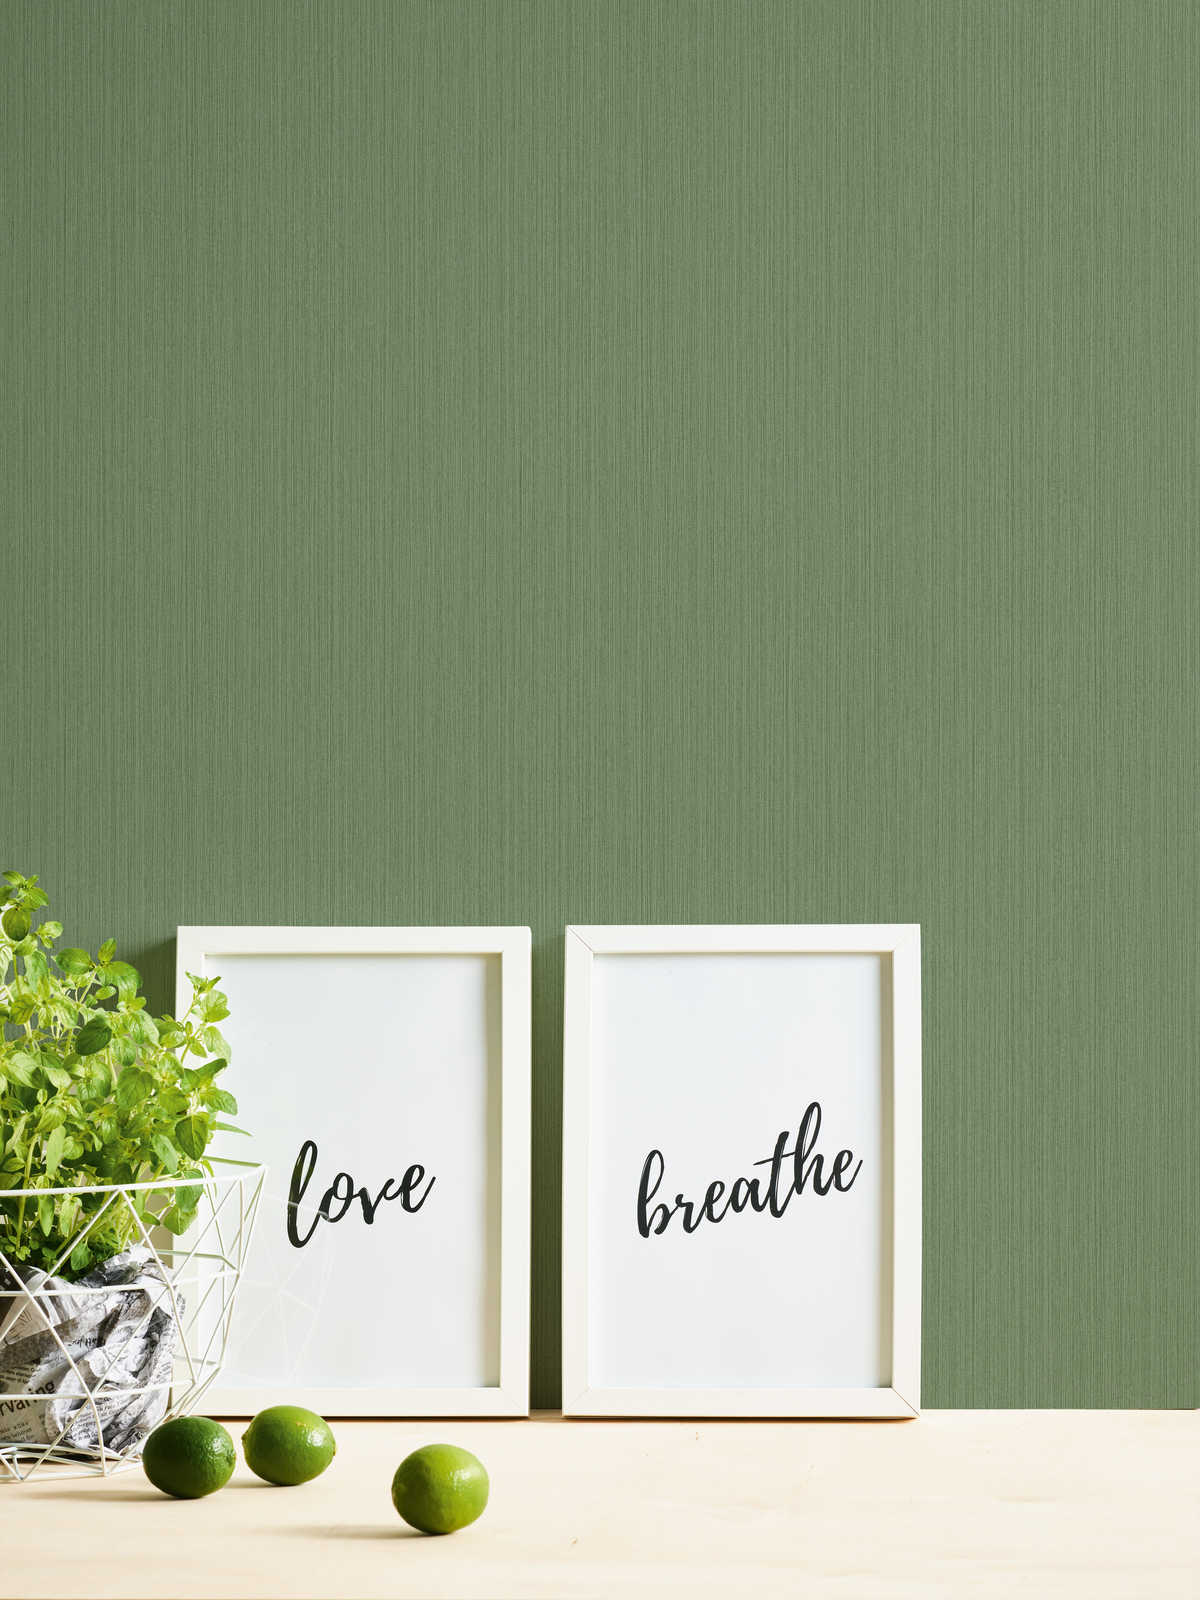             Einfarbige Tapete Grün mit meliertem Textileffekt von MICHALSKY
        